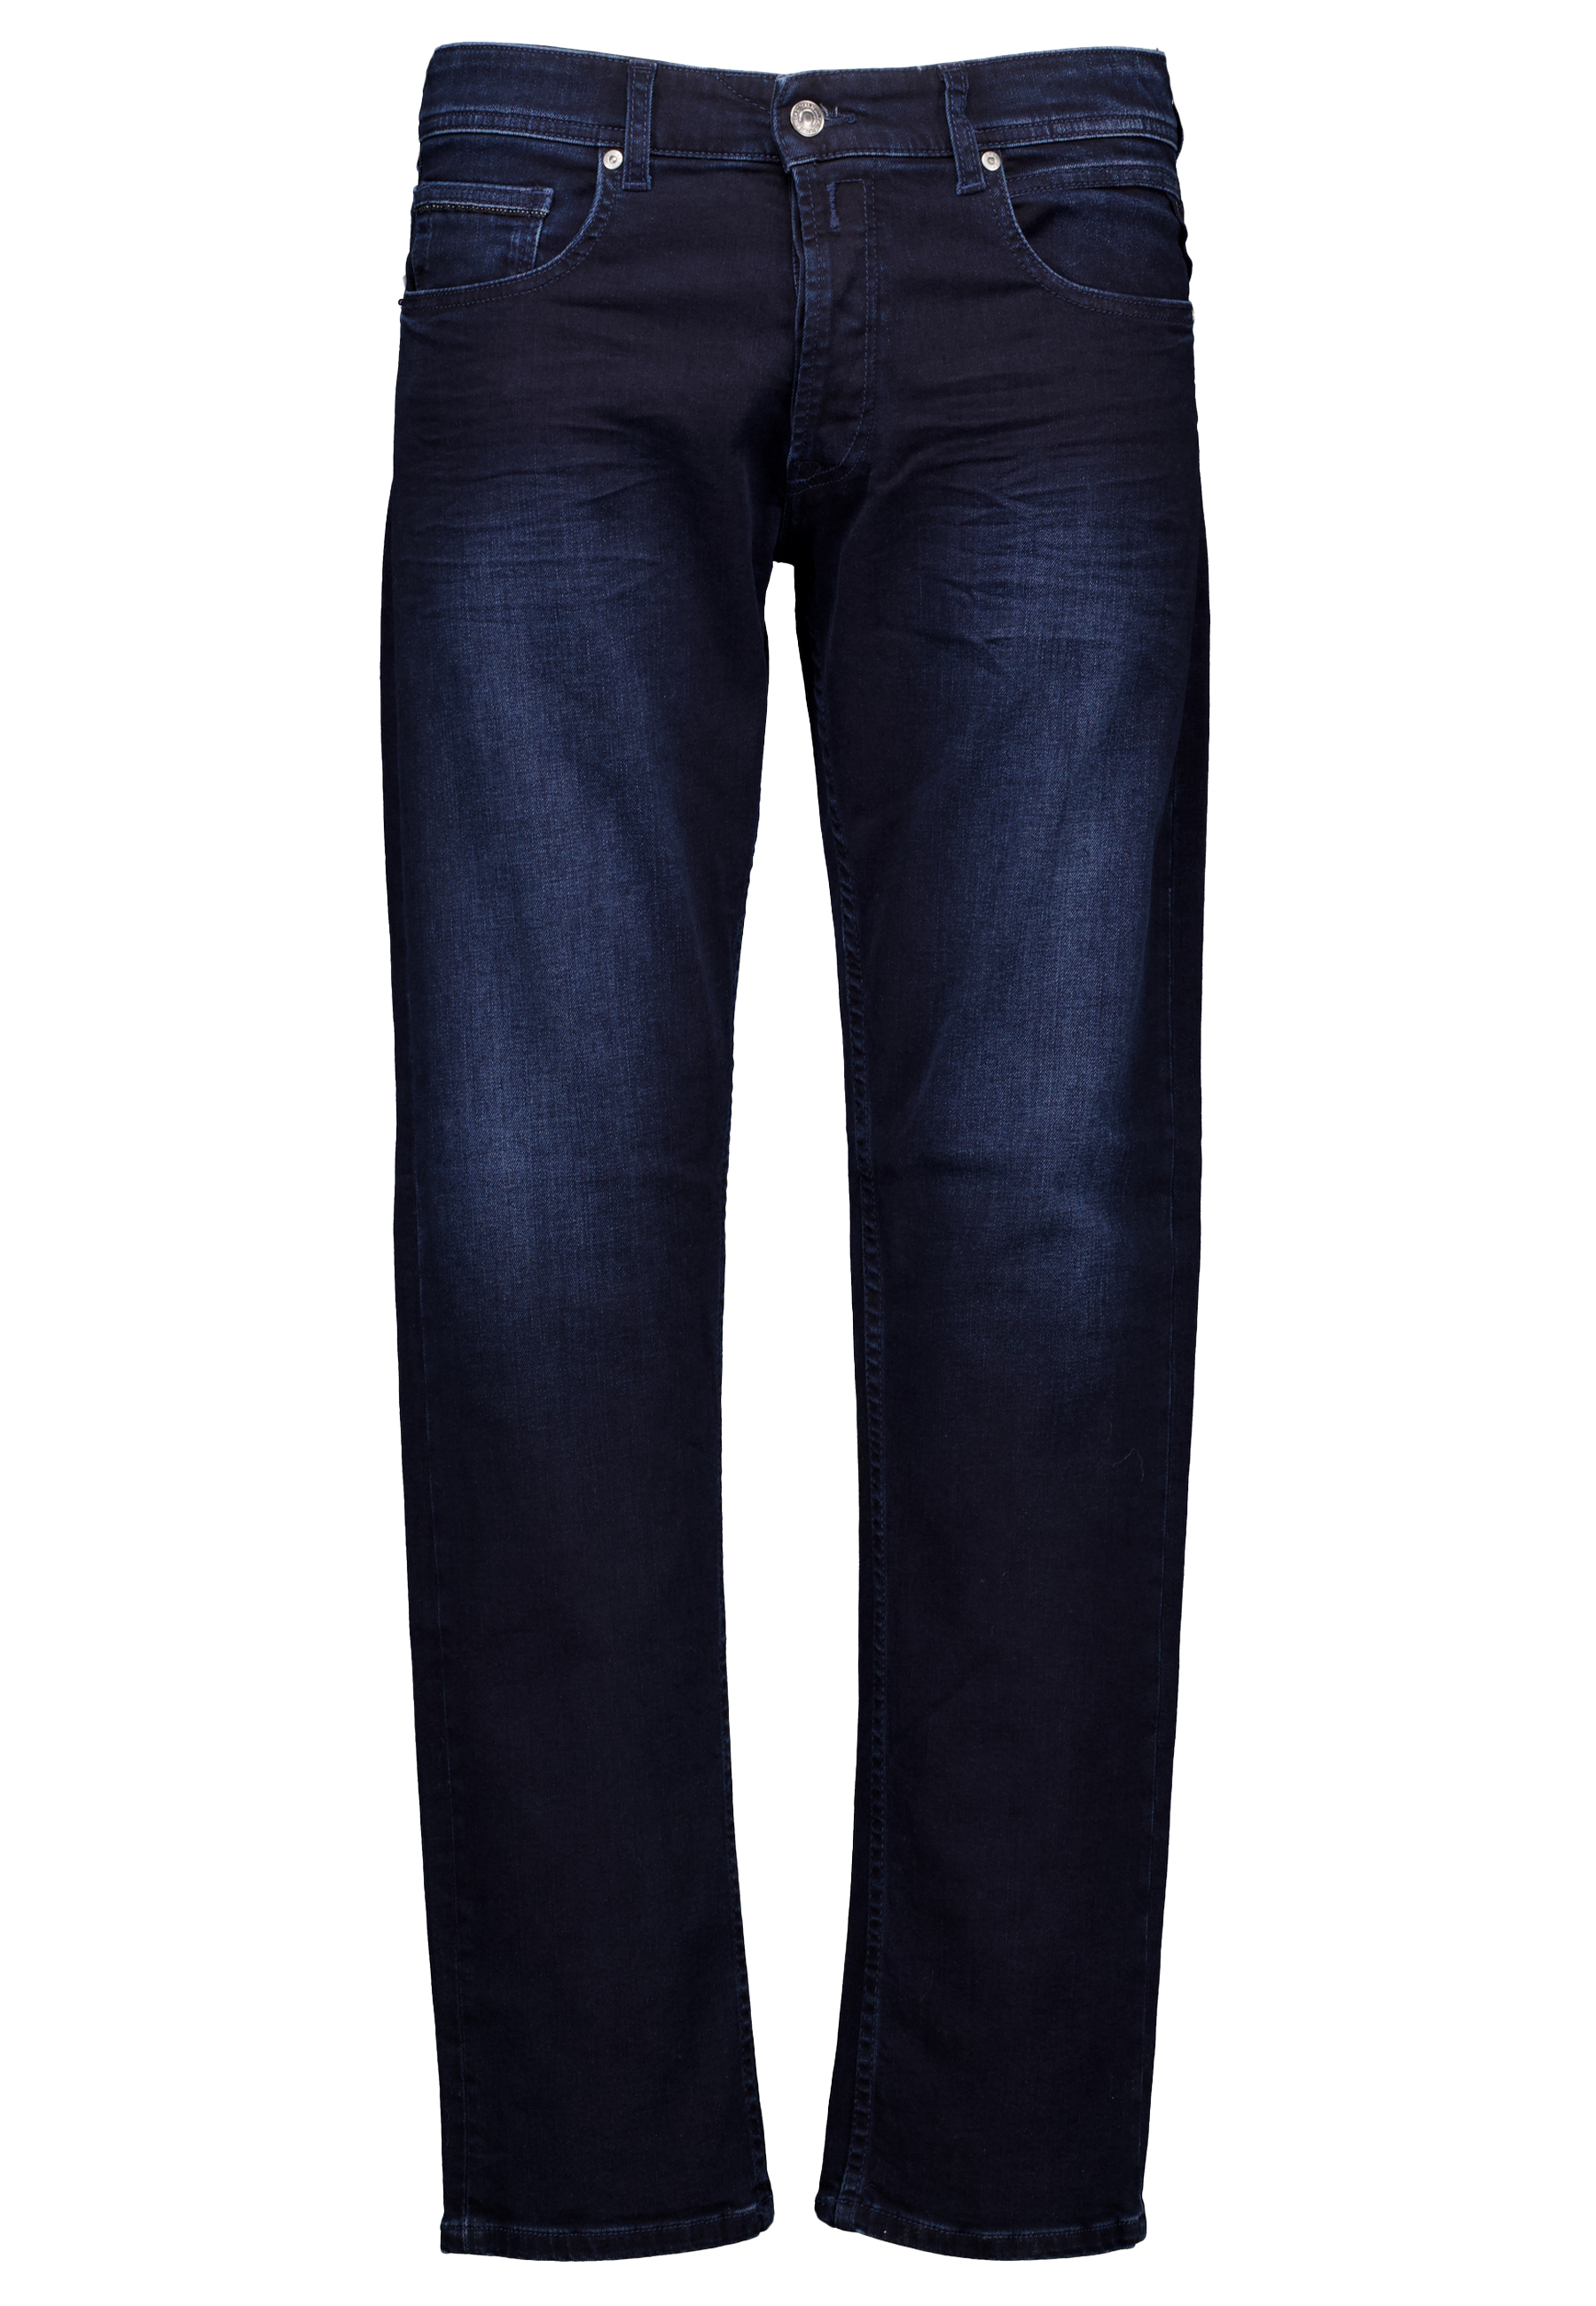 Replay jeans blauw Heren maat 33/32